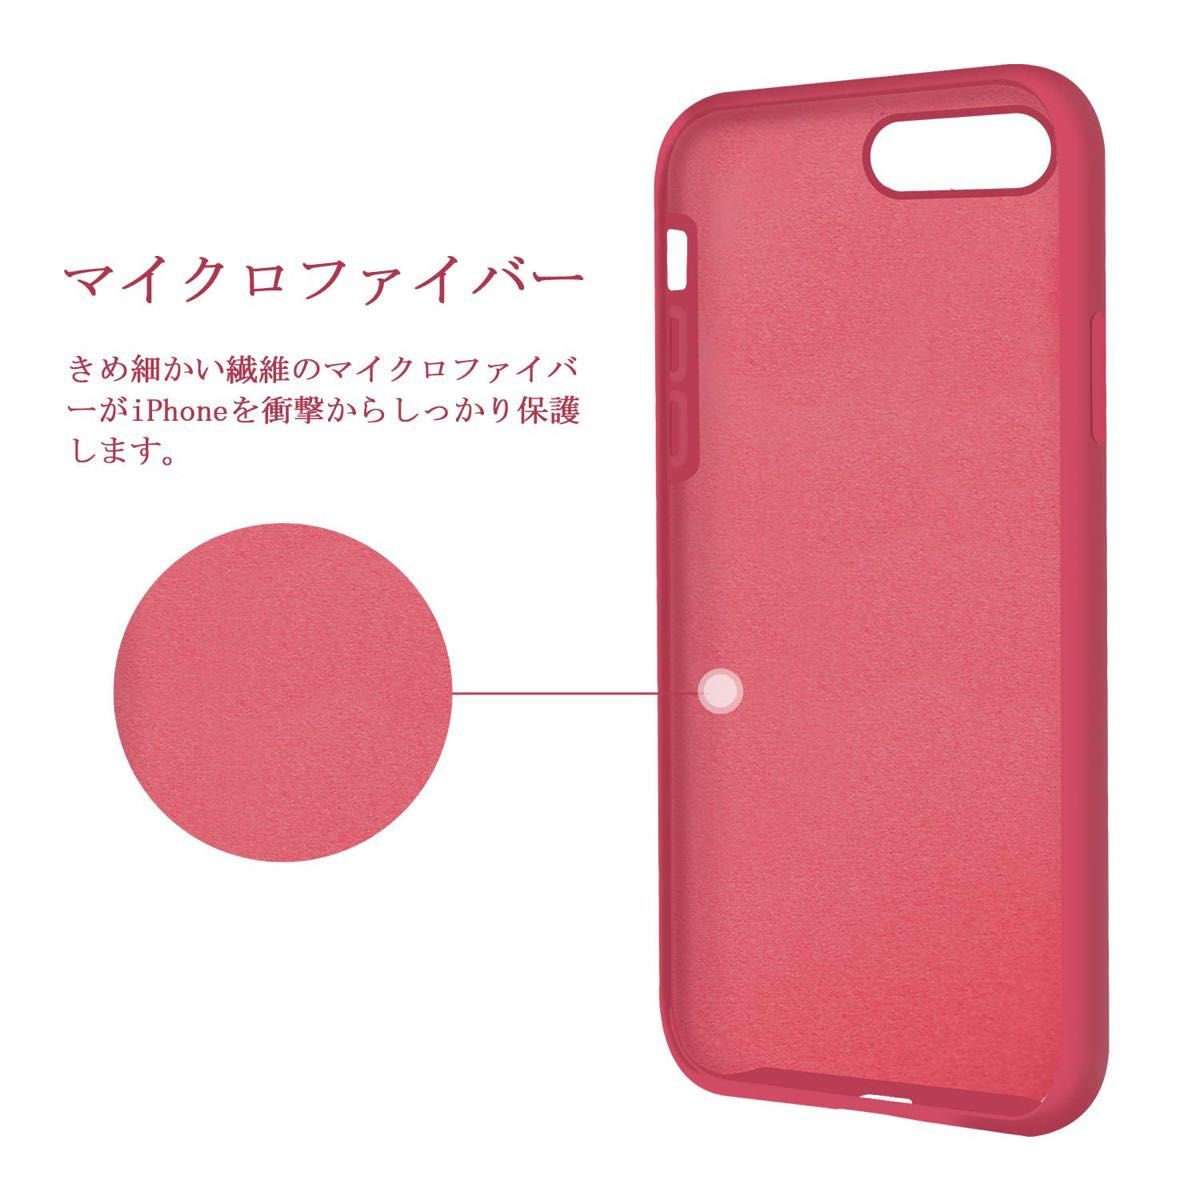 超軽量 スマホケース iPhone SE 7 8 ピンク ソフトケース シリコン